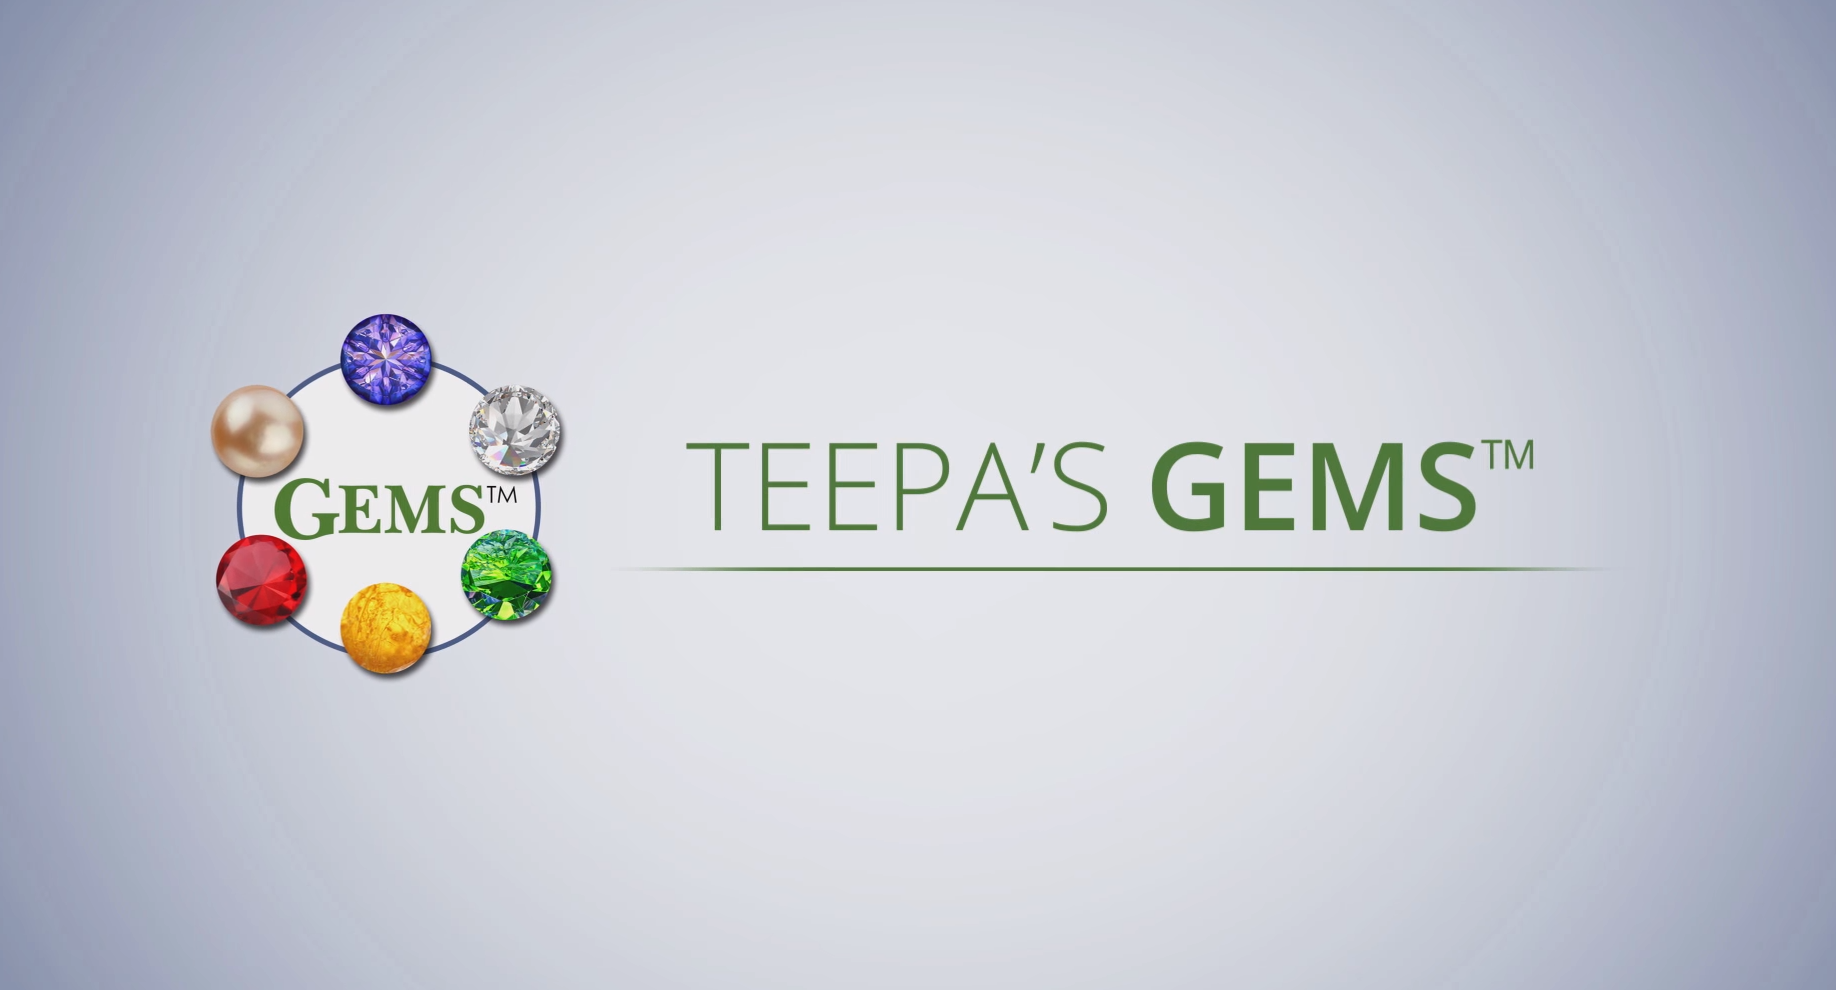 Teepa's Gems